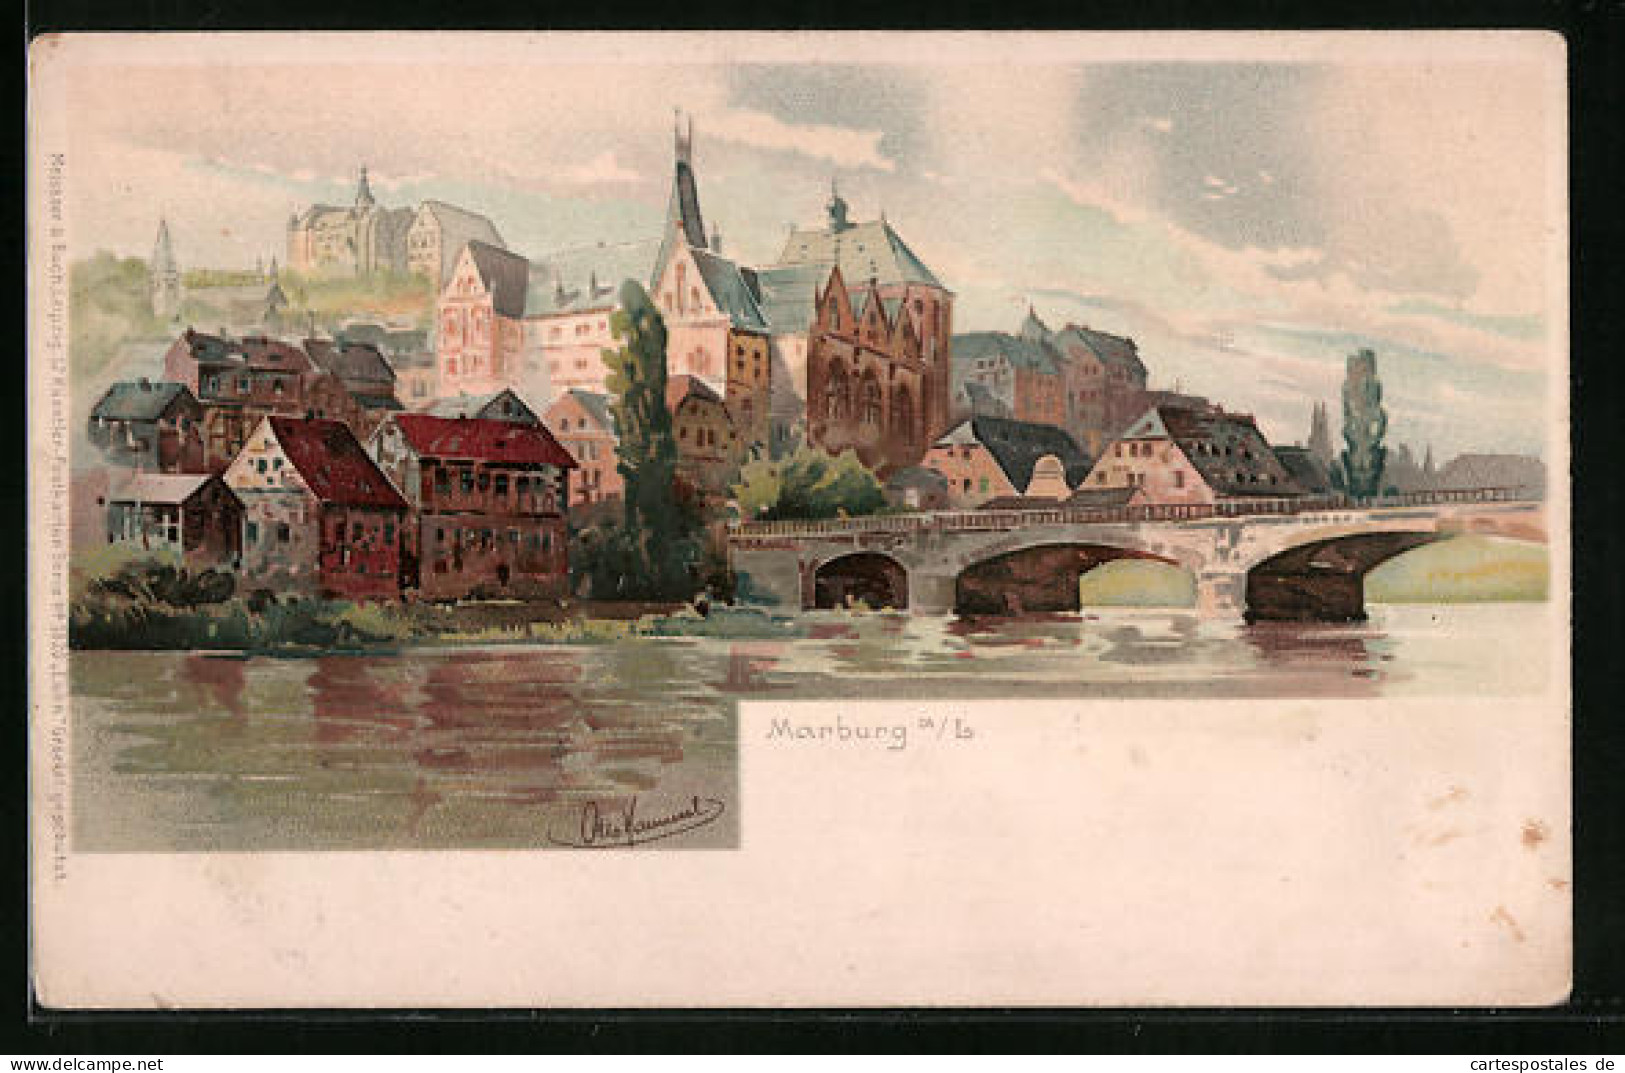 Lithographie Marburg A. L., Uferpartie Mit Brücke  - Marburg